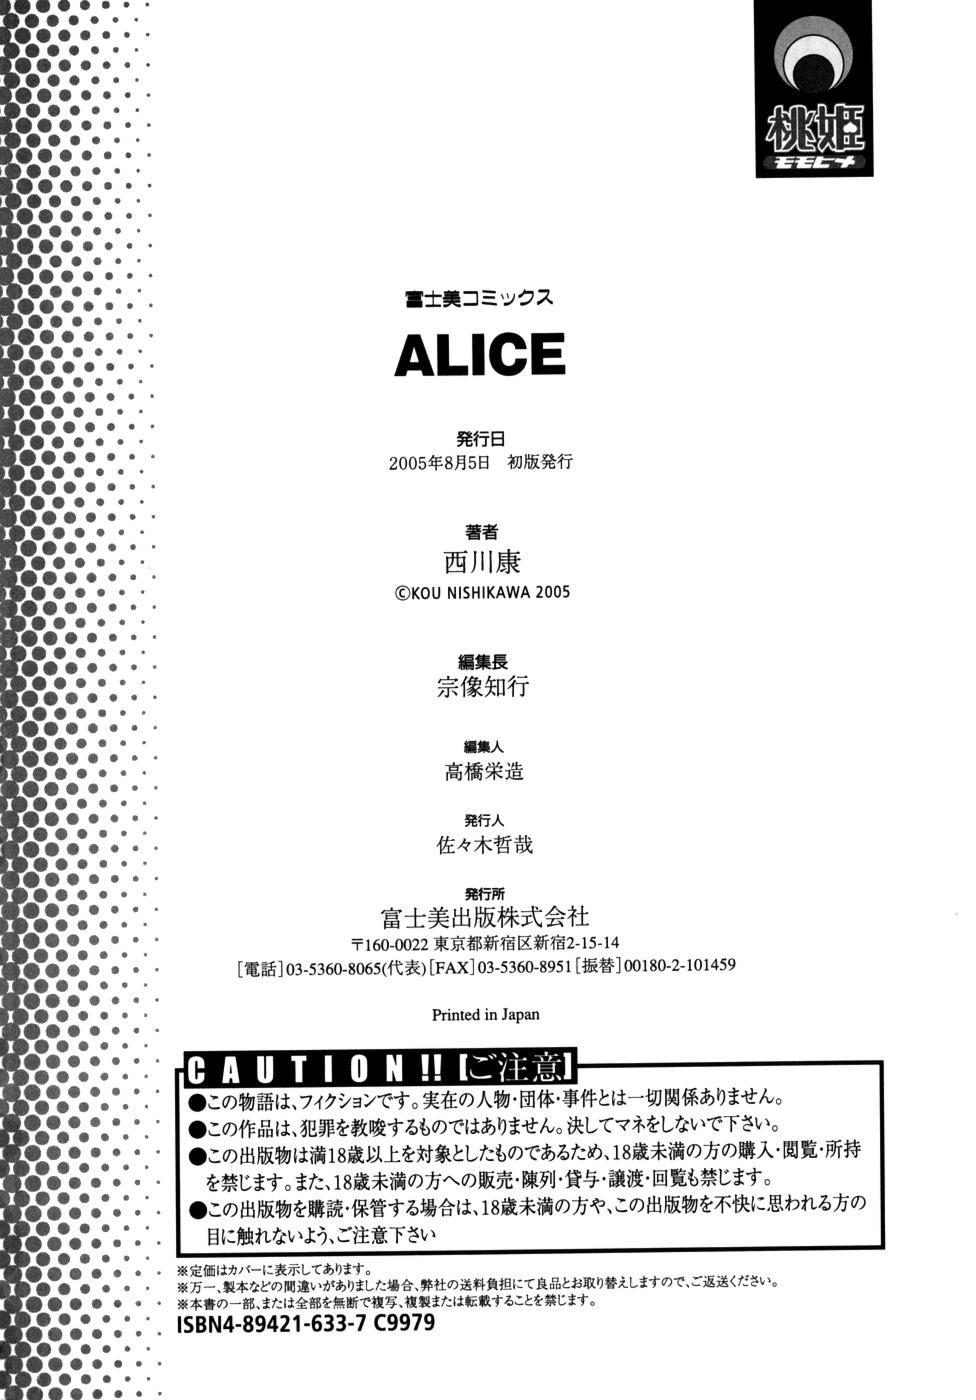 Alice 198